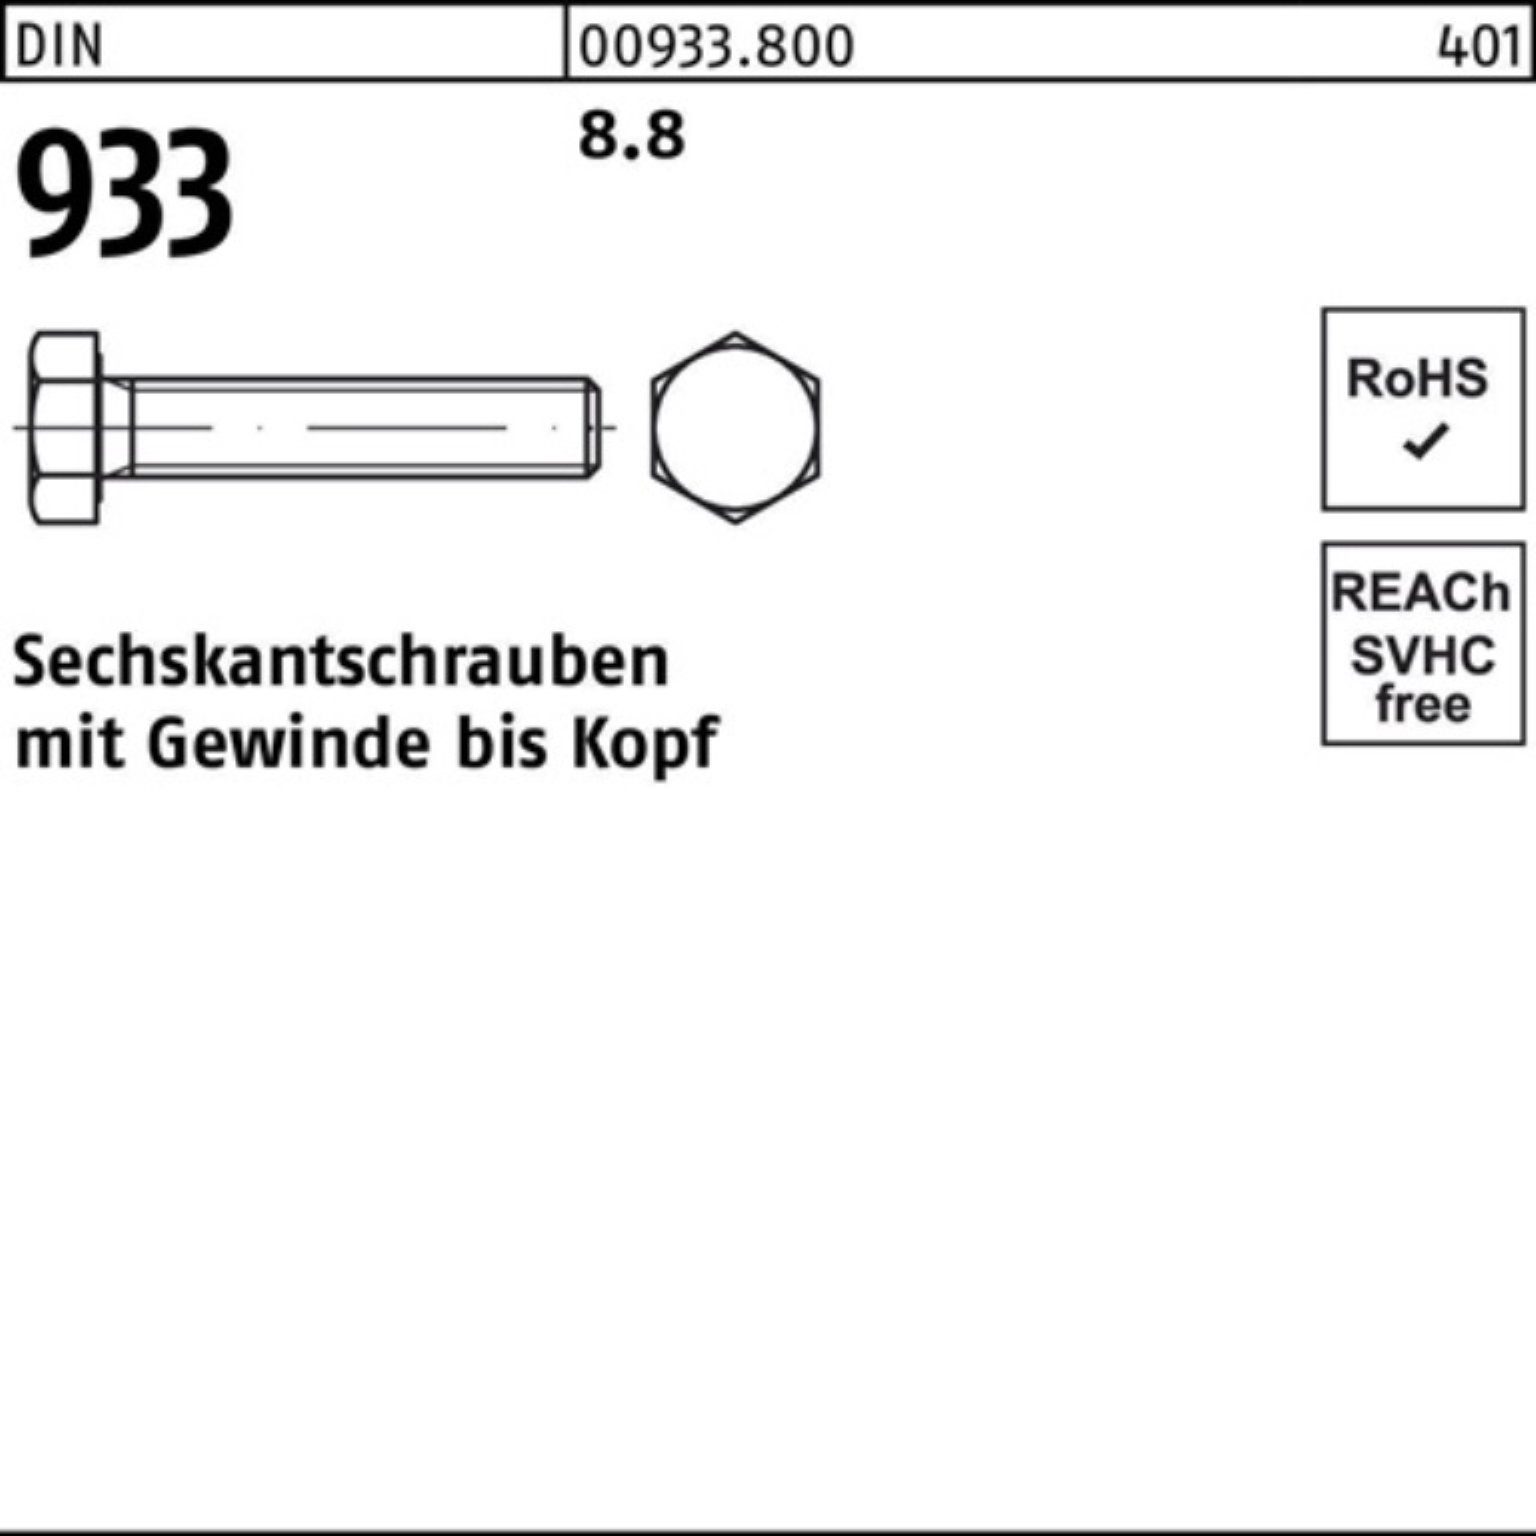 Reyher Sechskantschraube Pack 8.8 933 100er 10 DIN 70 Sechskantschraube VG DIN Stück 933 M27x